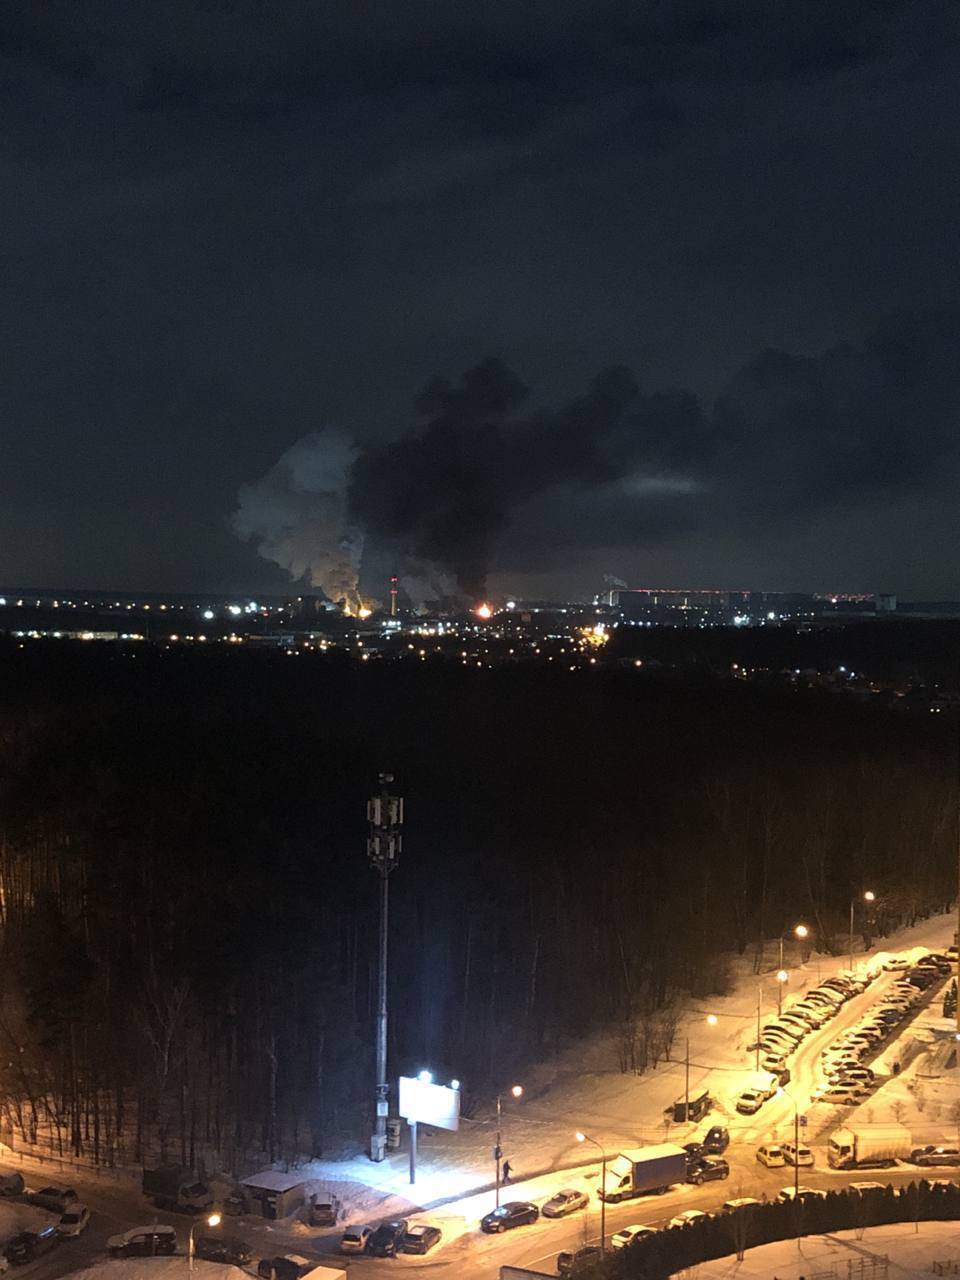 Под Москвой вспыхнул масштабный пожар на коксогазовом заводе: произошел взрыв, огонь охватил один из цехов. Фото и видео